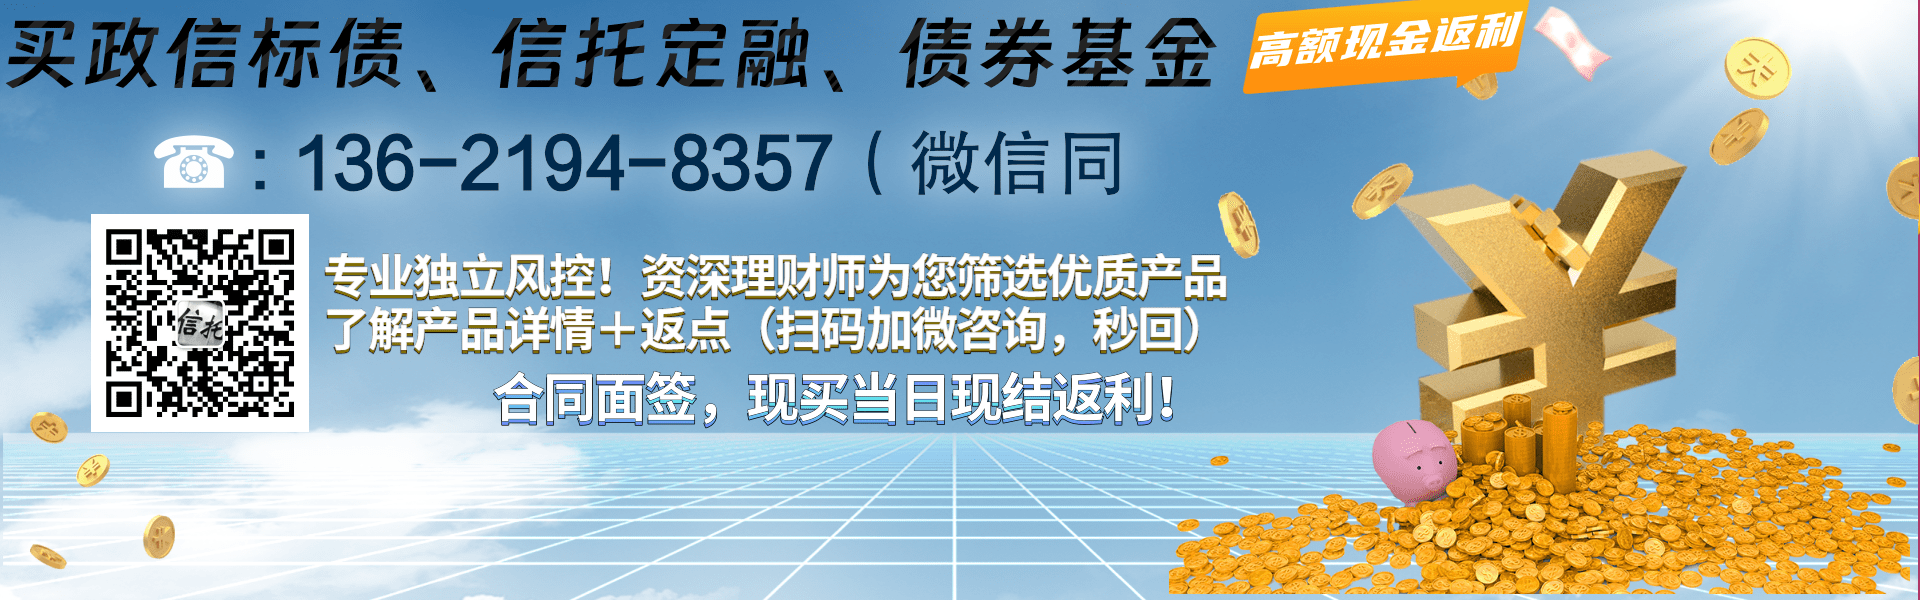 央企信托-70号陕西咸阳公募债券集合信托计划